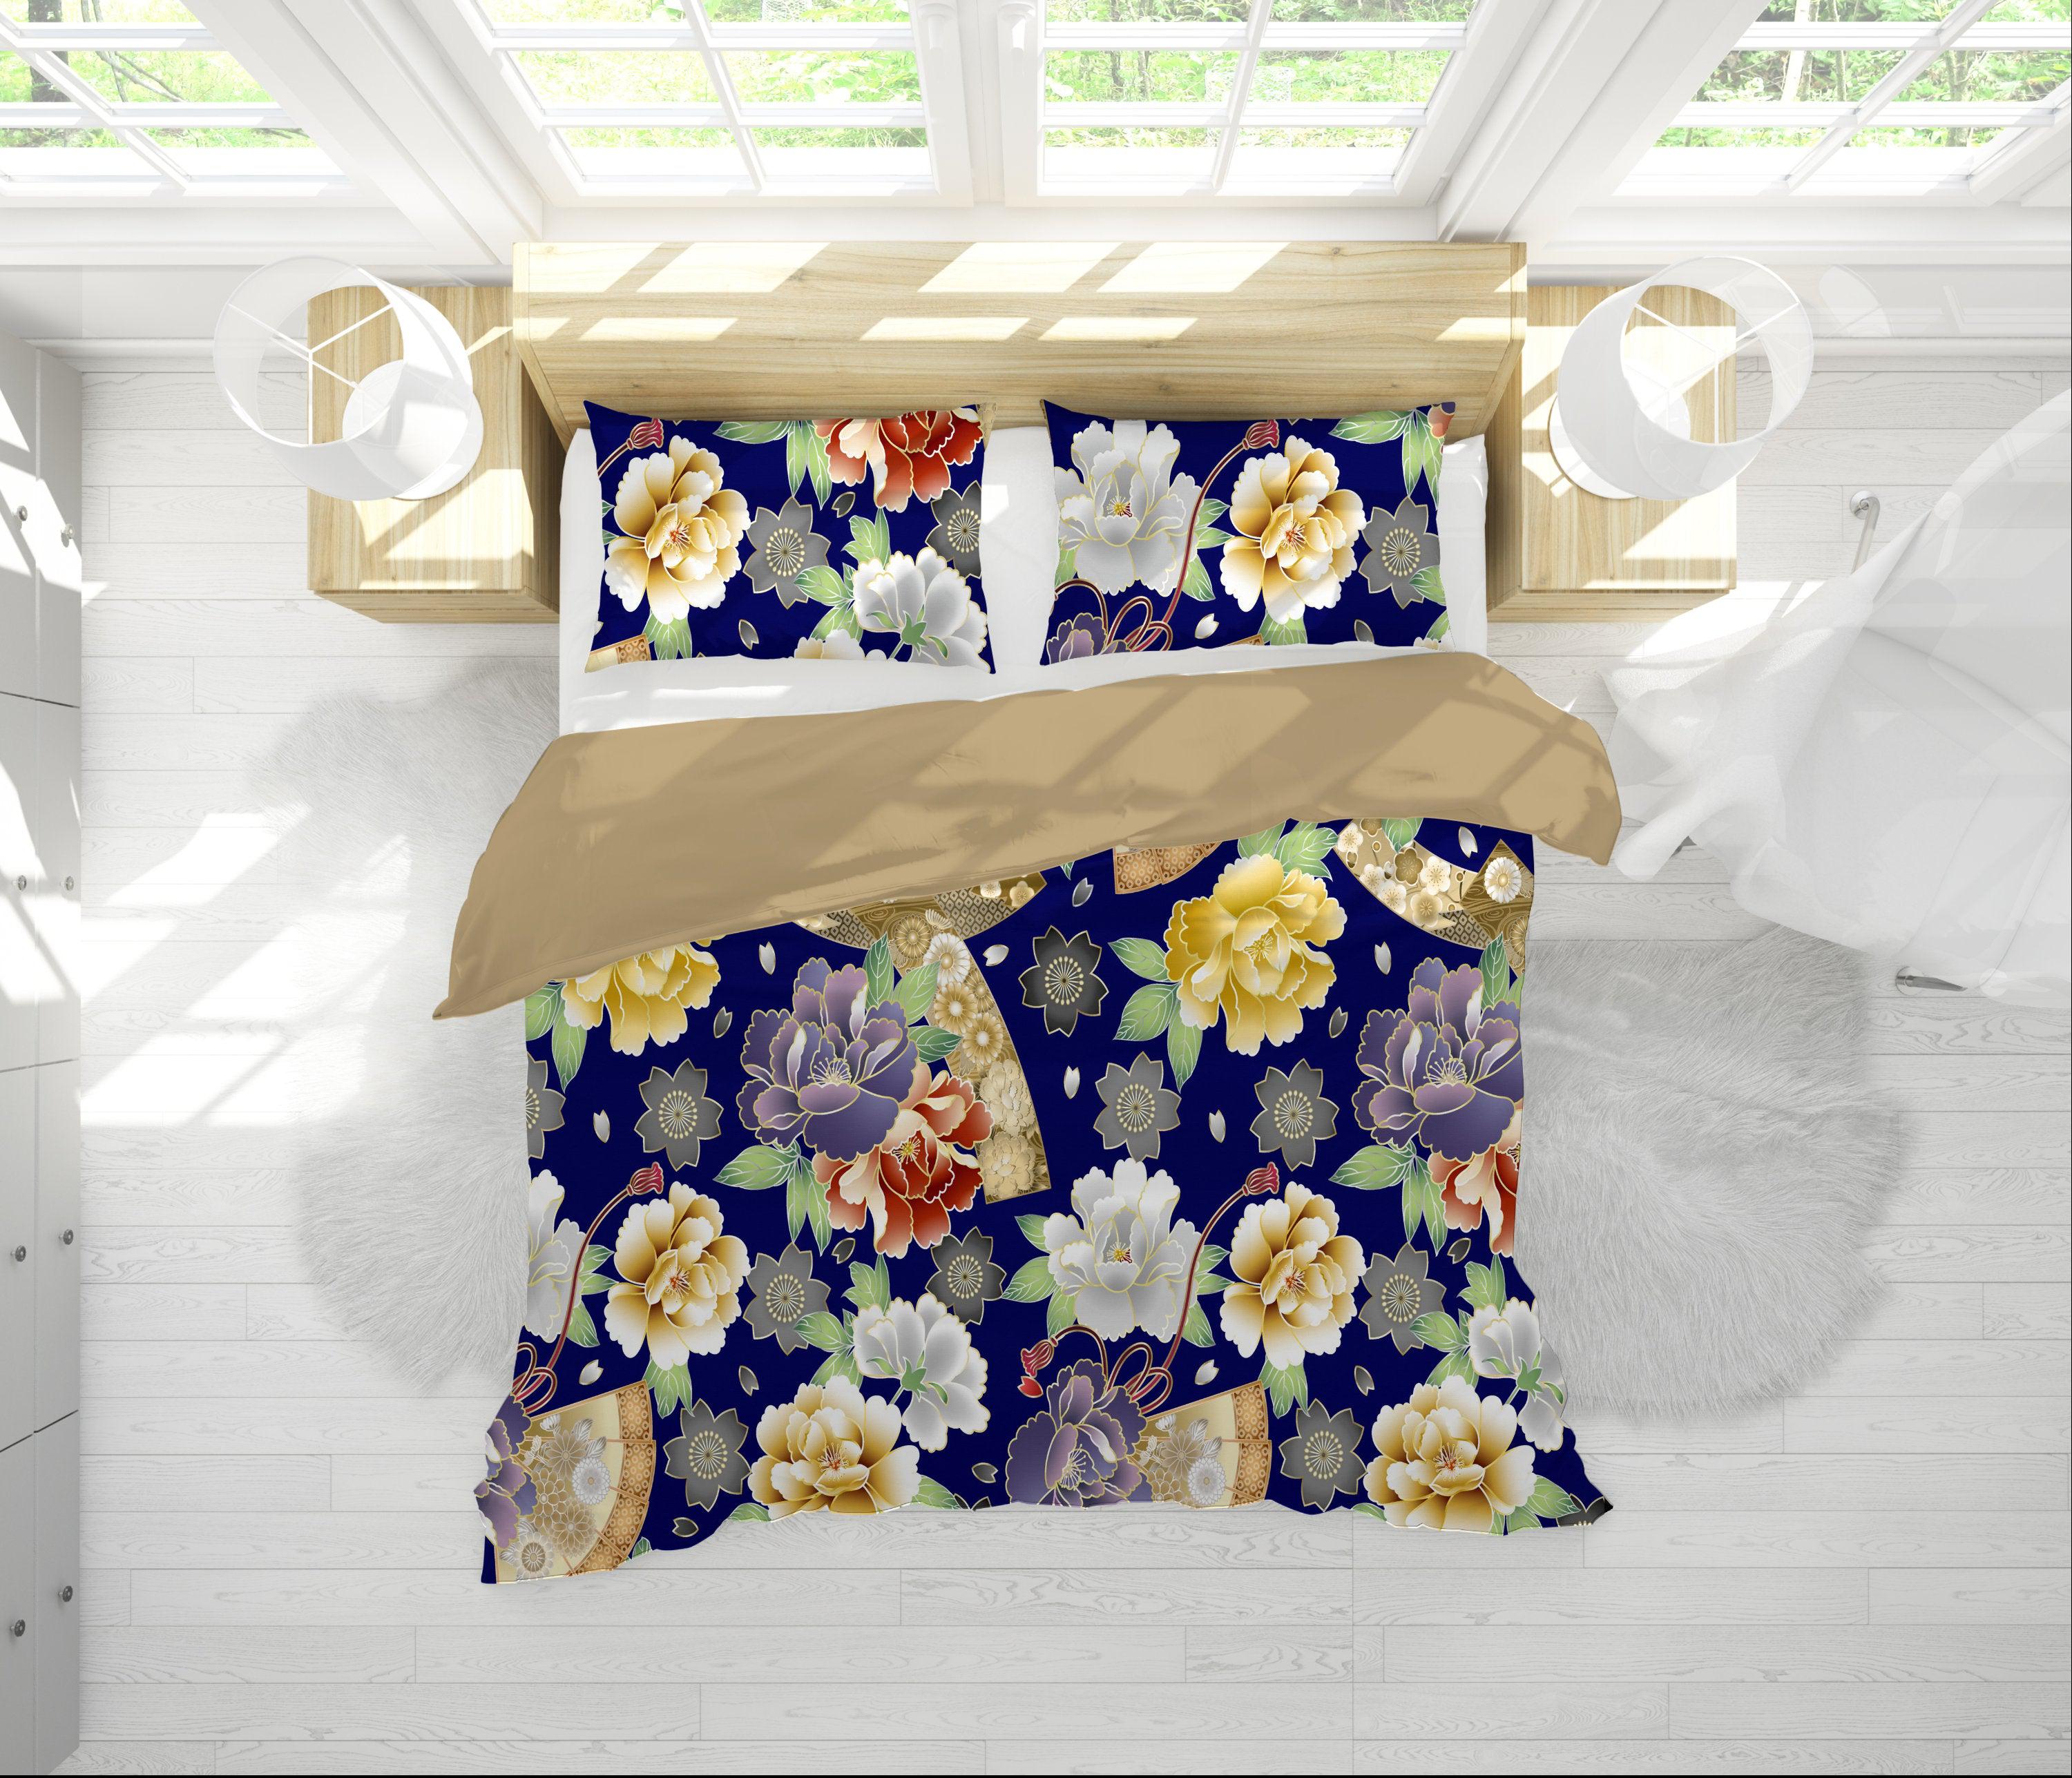 daintyduvet Blue Duvet Cover Full Set | Comforter Cover Set with Japanese Kimono Floral Prints